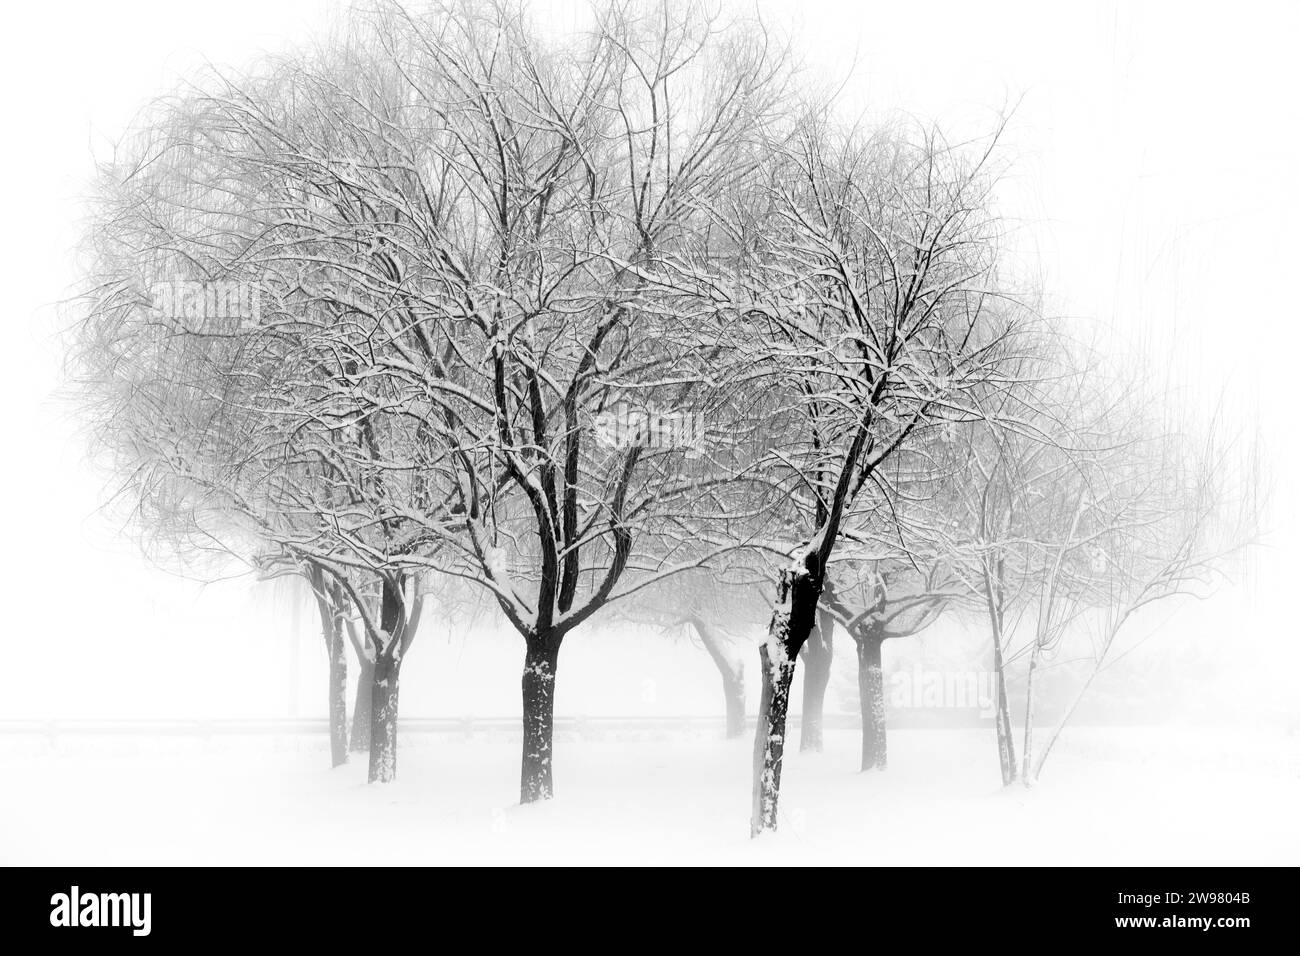 Un'immagine in bianco e nero di un paesaggio invernale con alcuni alberi innevati in primo piano Foto Stock